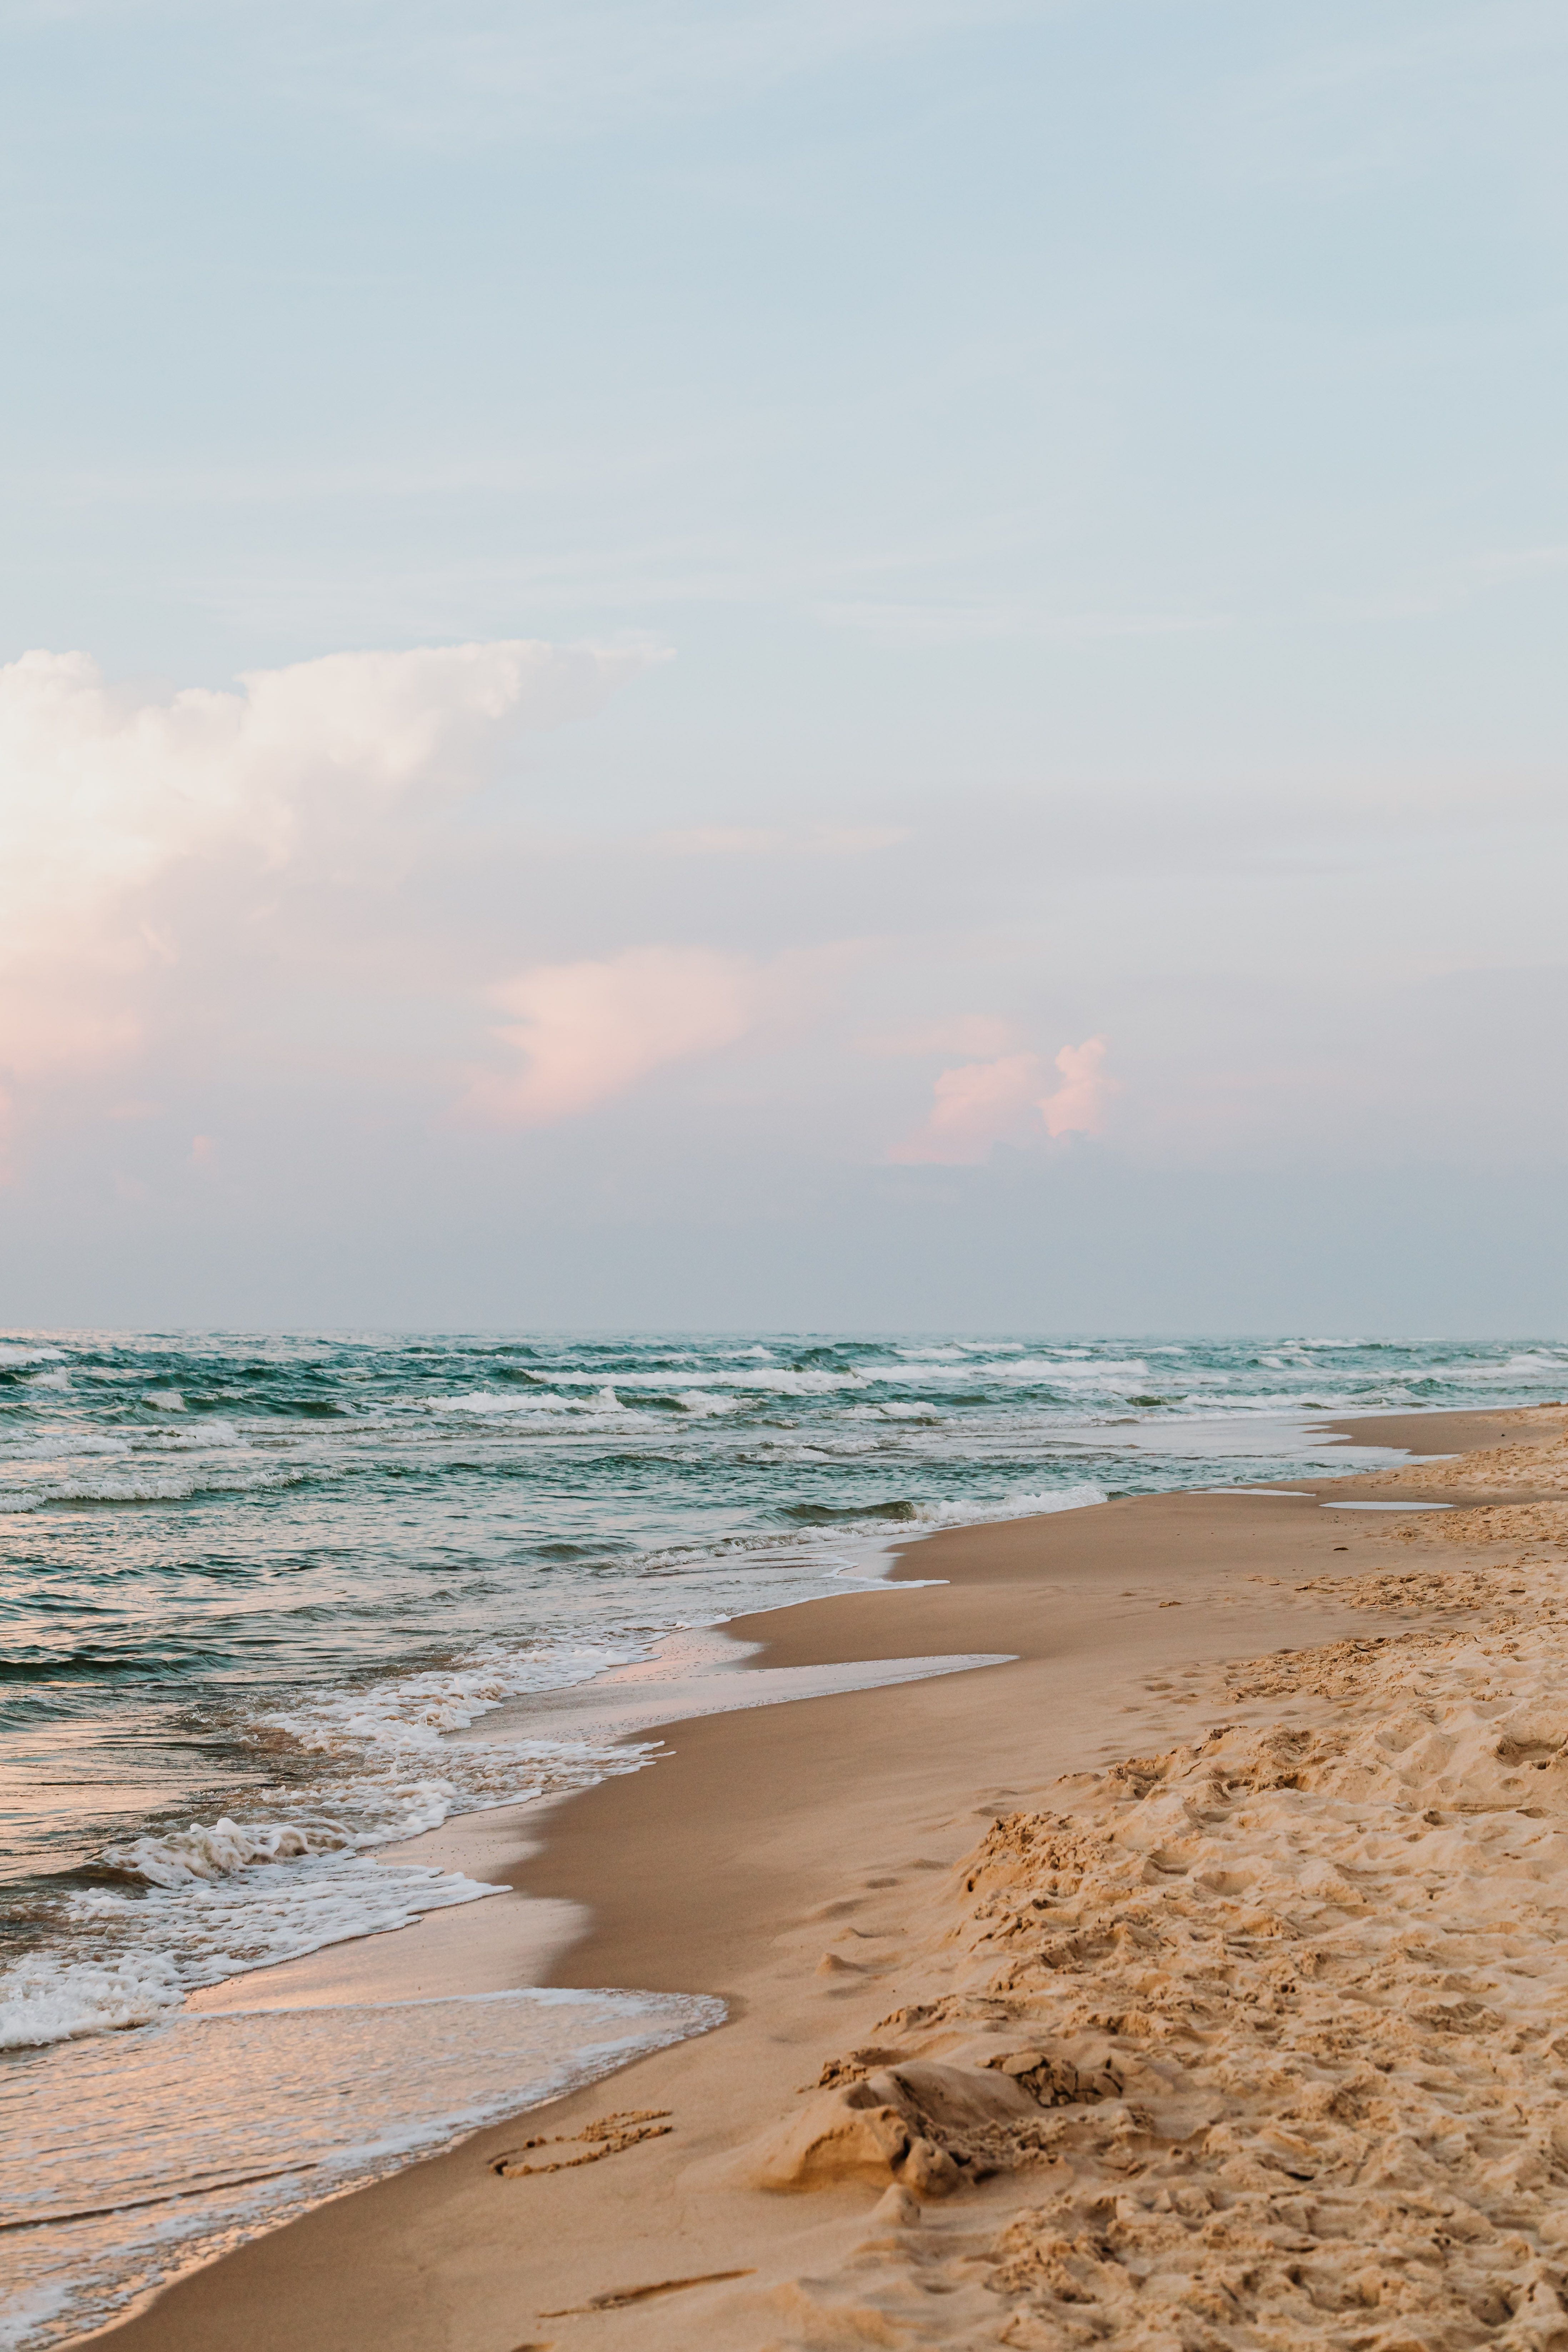  Meer Strand Hintergrundbild 4390x6585. Kostenloses Foto zum Thema: blauer himmel, horizont, landschaftlich, meer, meeresküste, natur, ozean, sand, strand, vertikaler schuss, wallpaper, wasser, wellen